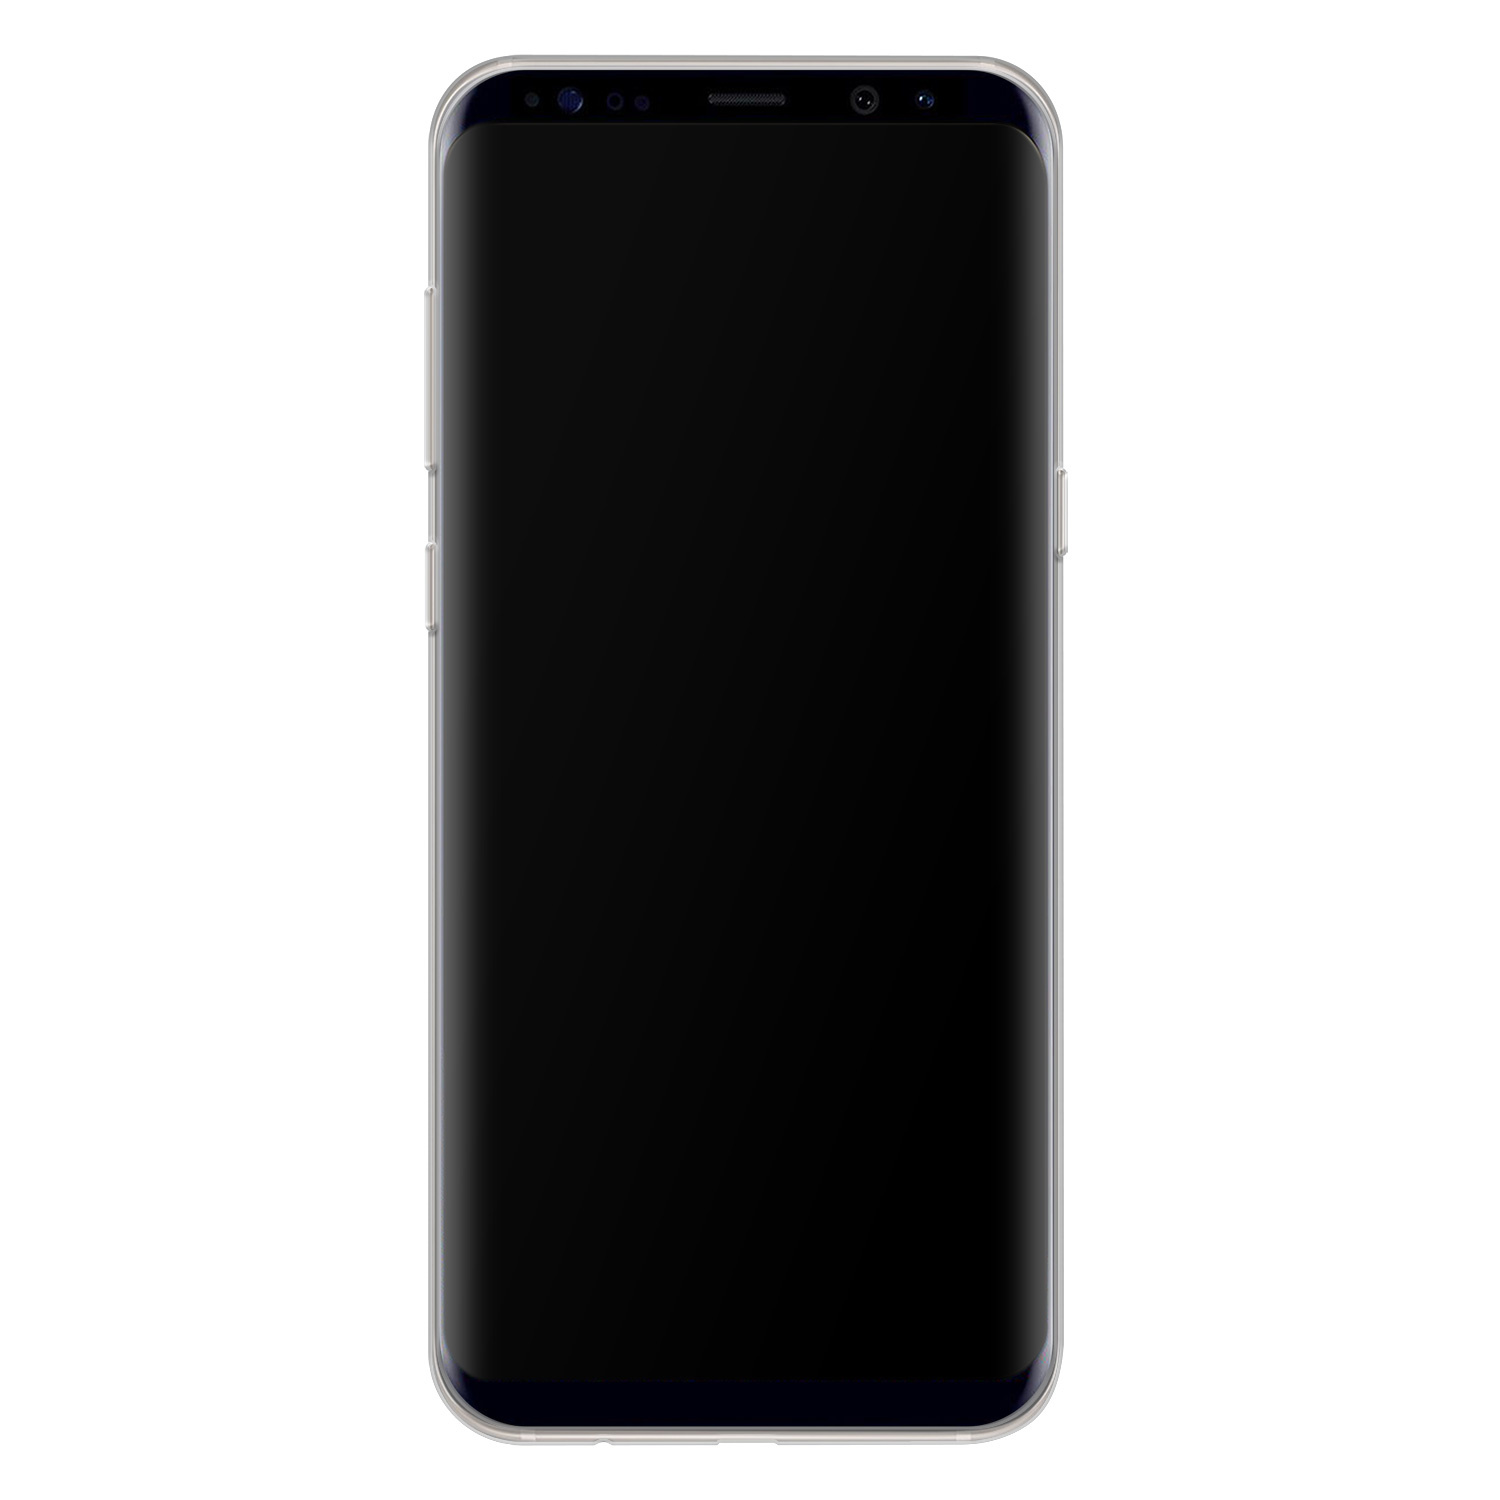 Leuke Telefoonhoesjes Samsung Galaxy S8 siliconen hoesje - Marmer roze goud